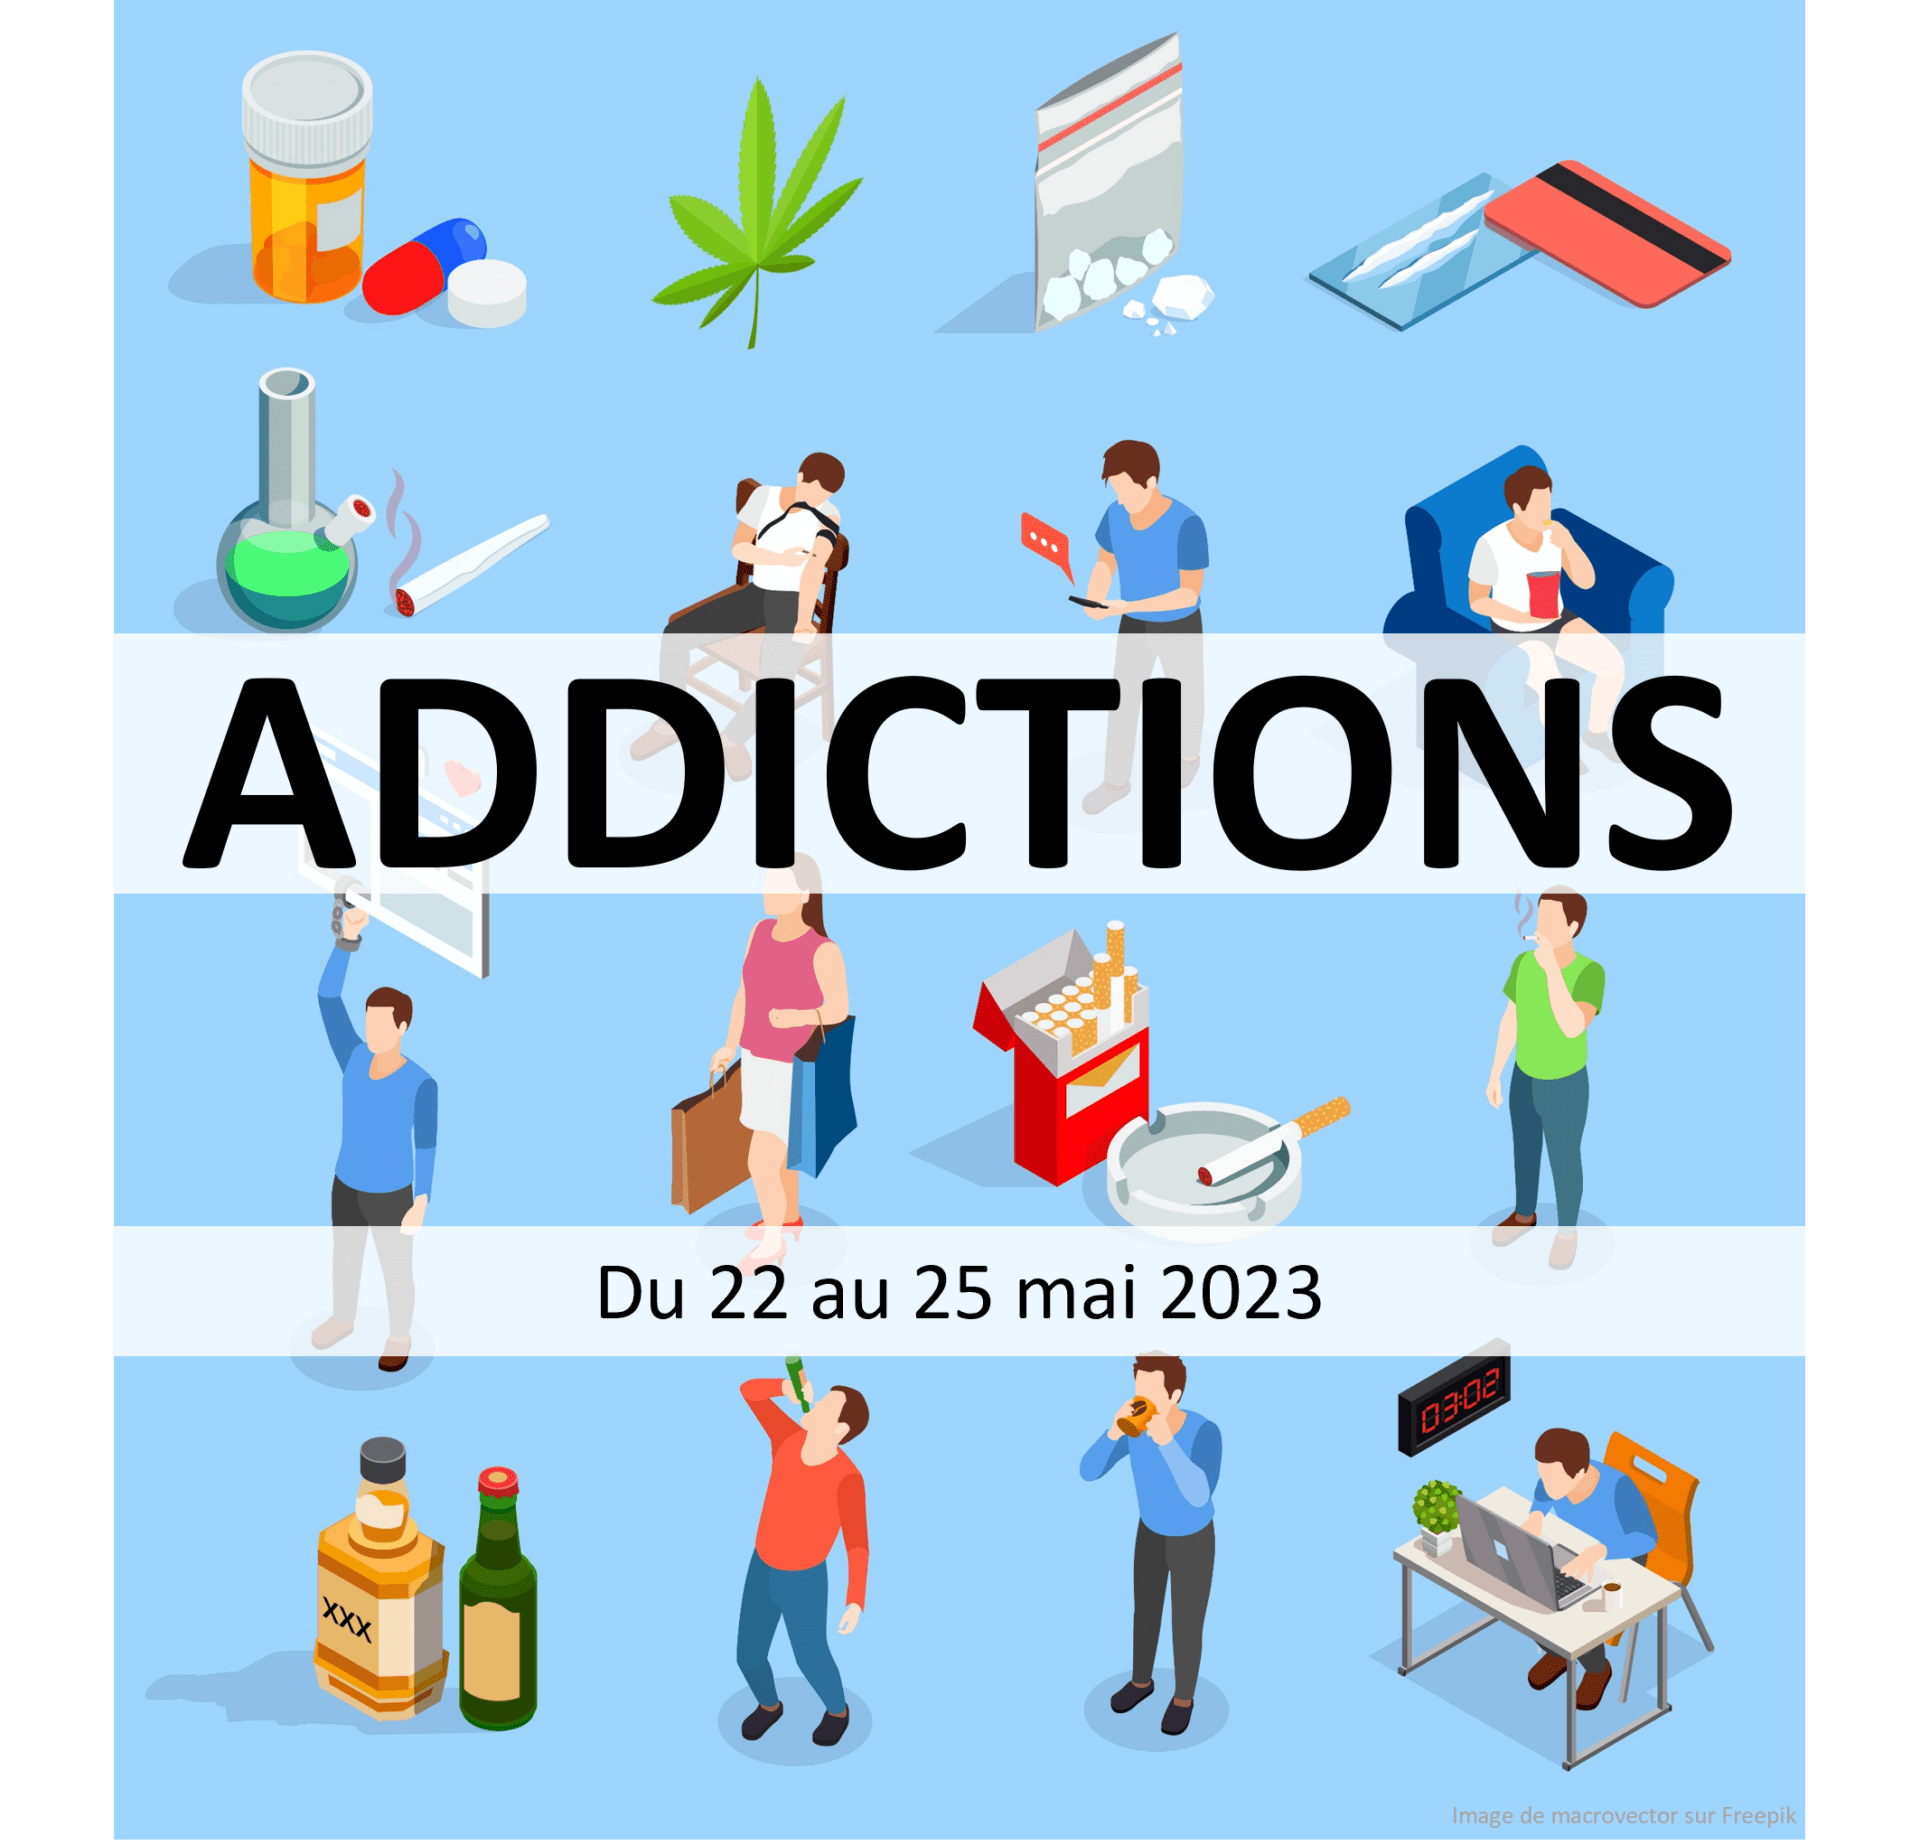 Evènement addictions prévention